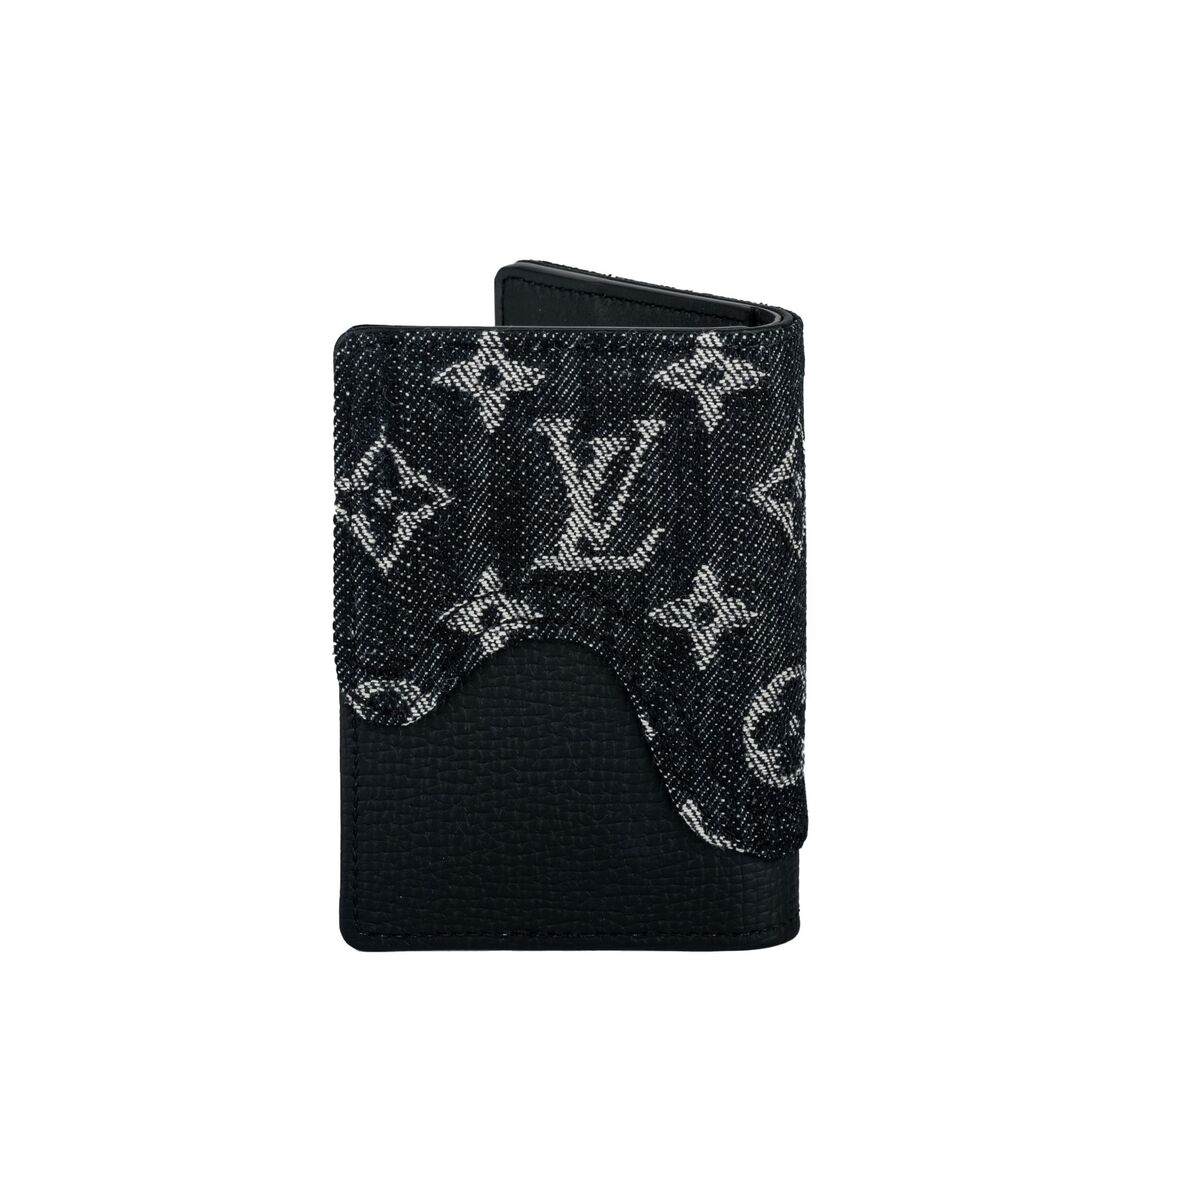 Louis Vuitton Virgil Abloh Off-White Multi PocketMonogram Velour